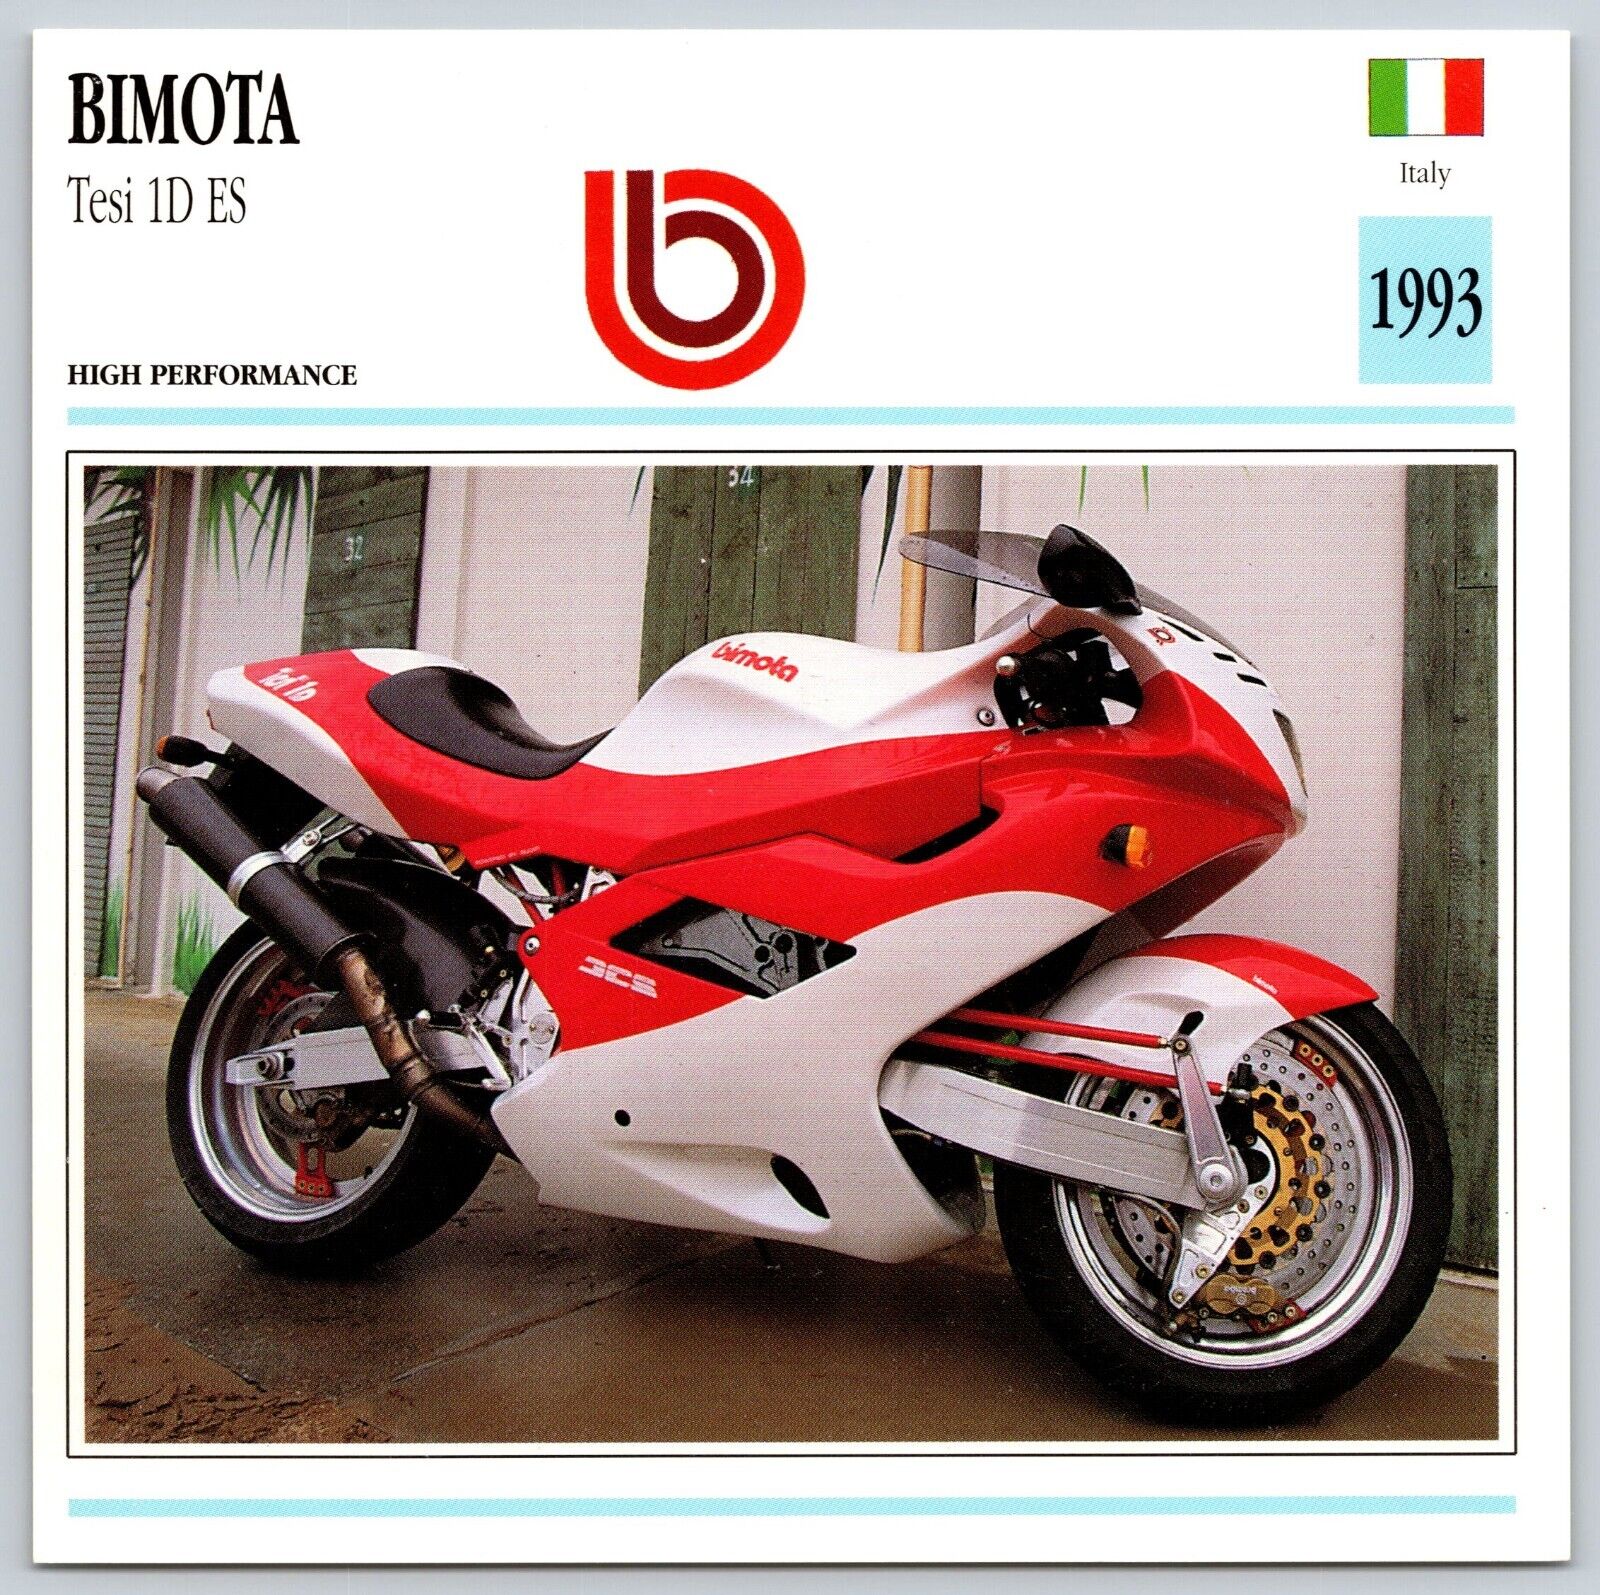 Bimota Tesi 1D ES 1993 Italy Edito Service Atlas Motorcycle Card